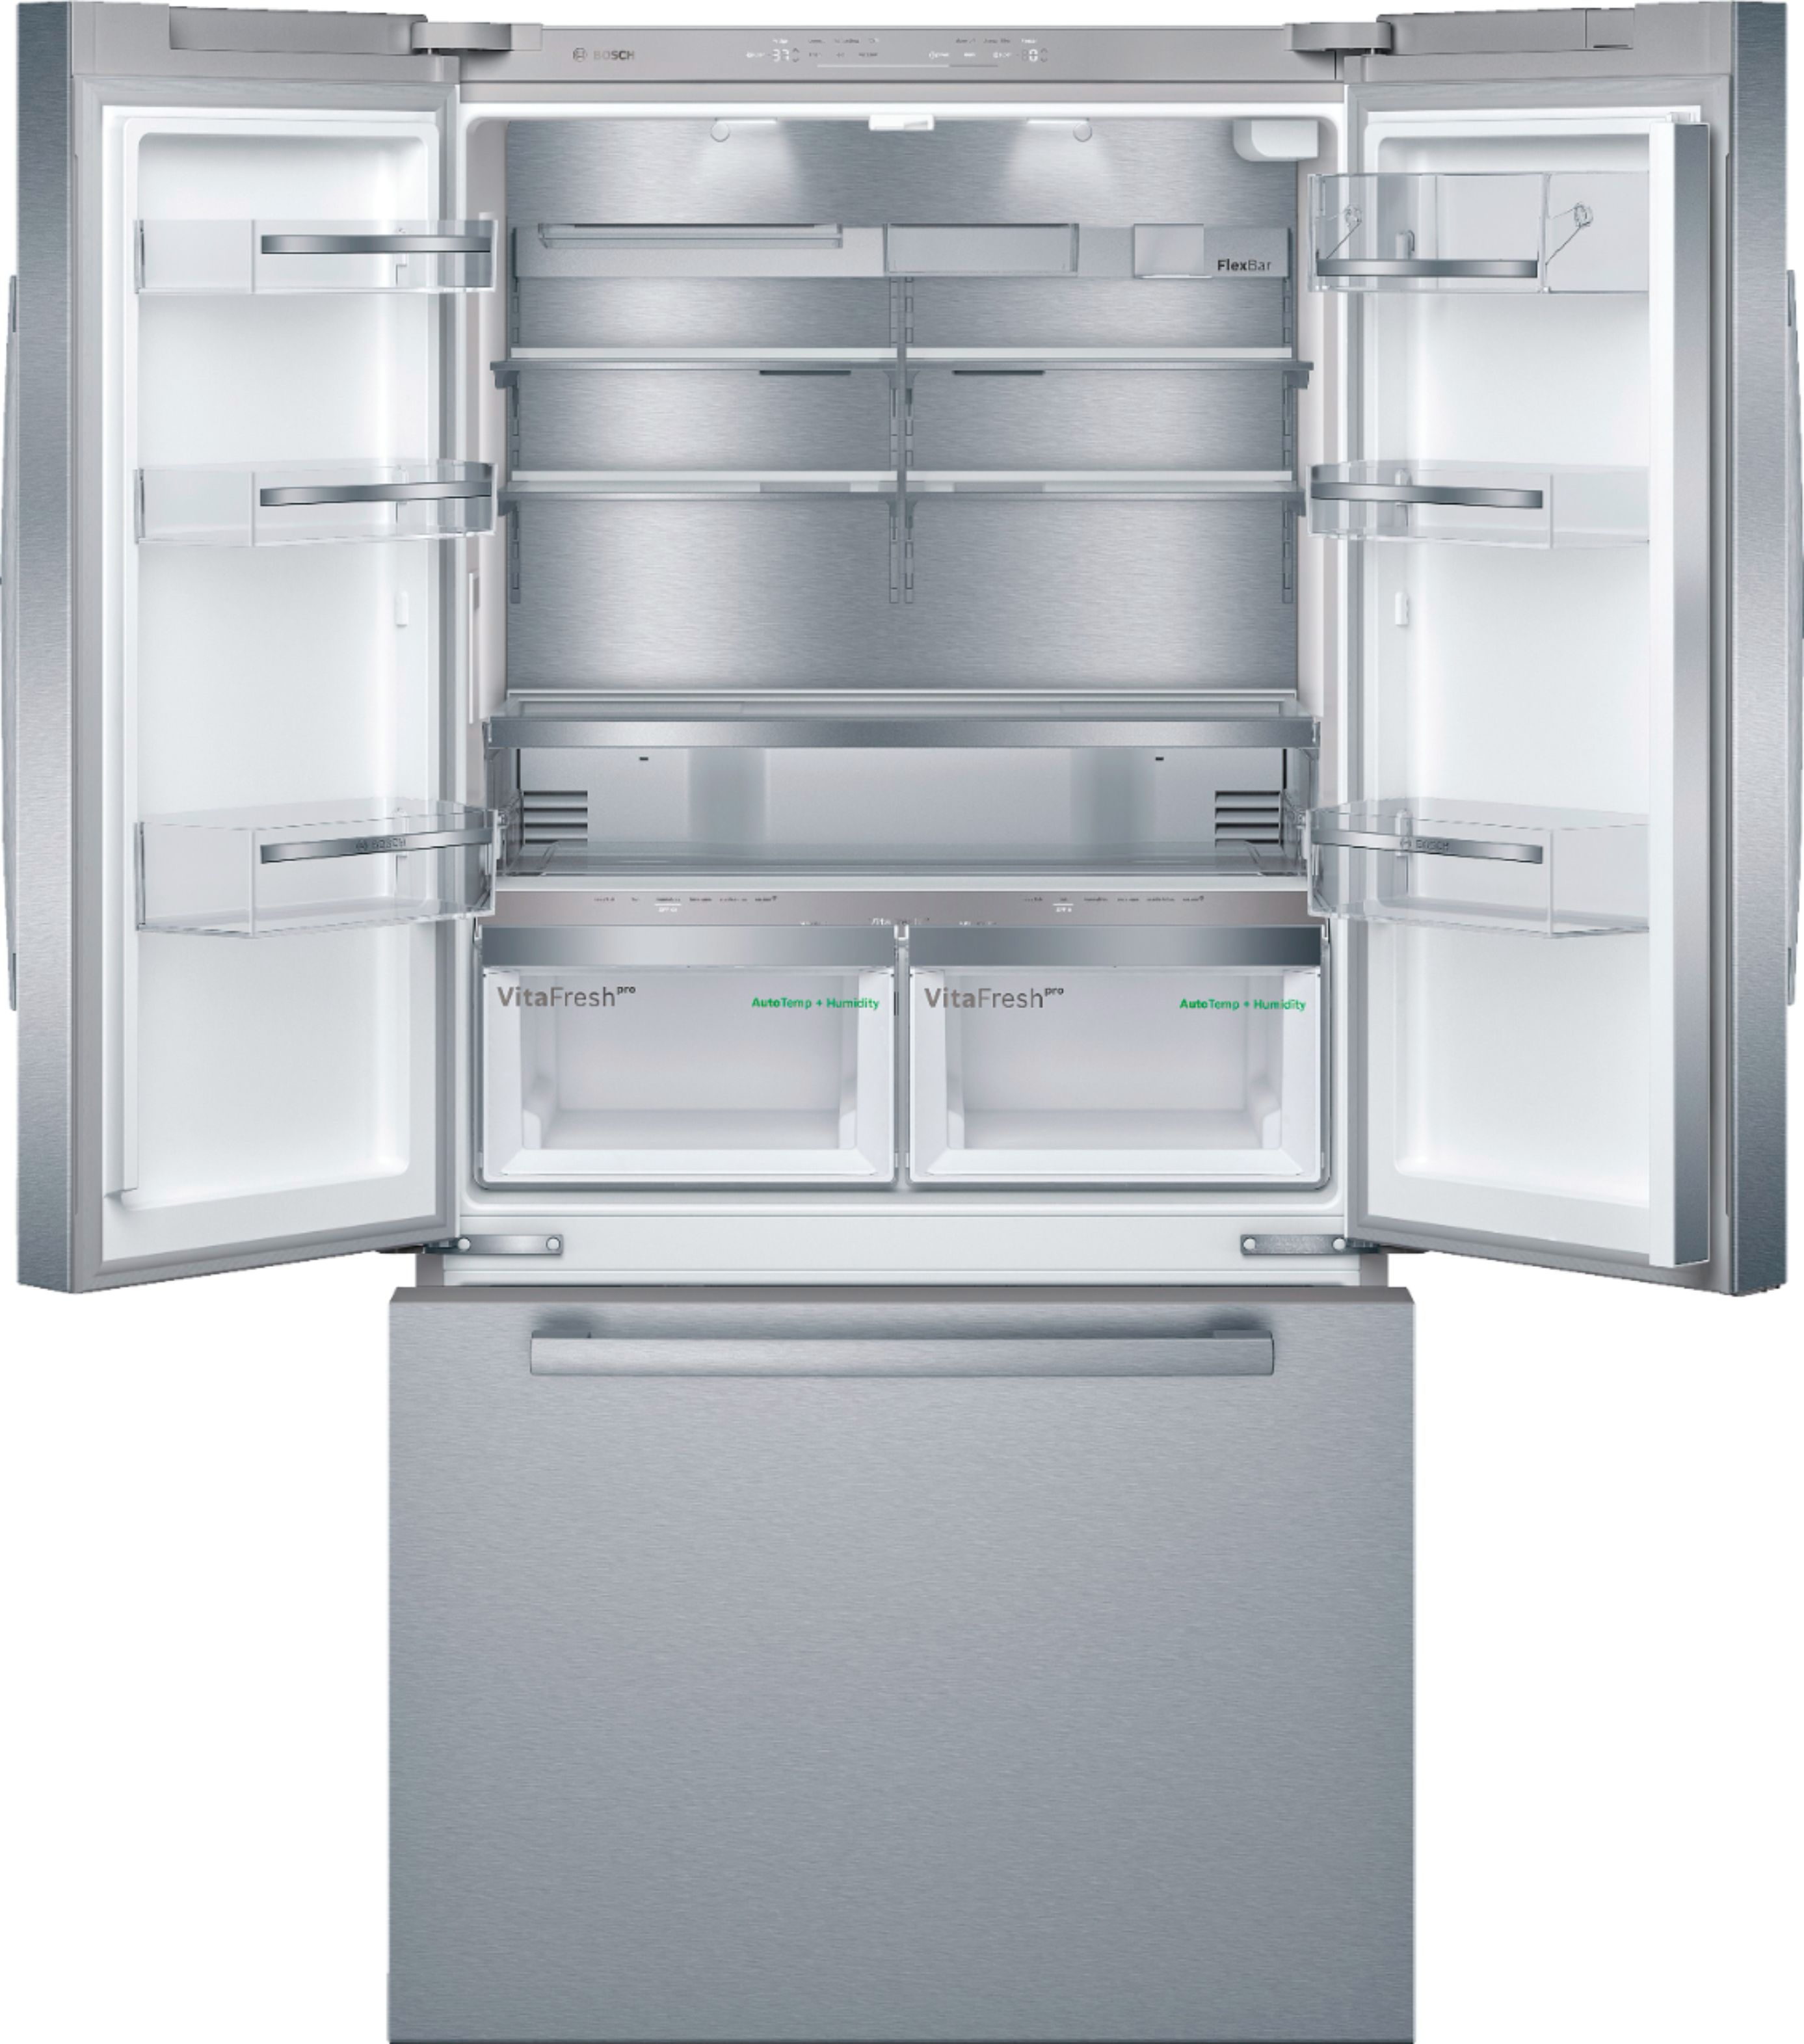 Bosch Refrigerator 800 Series Manual